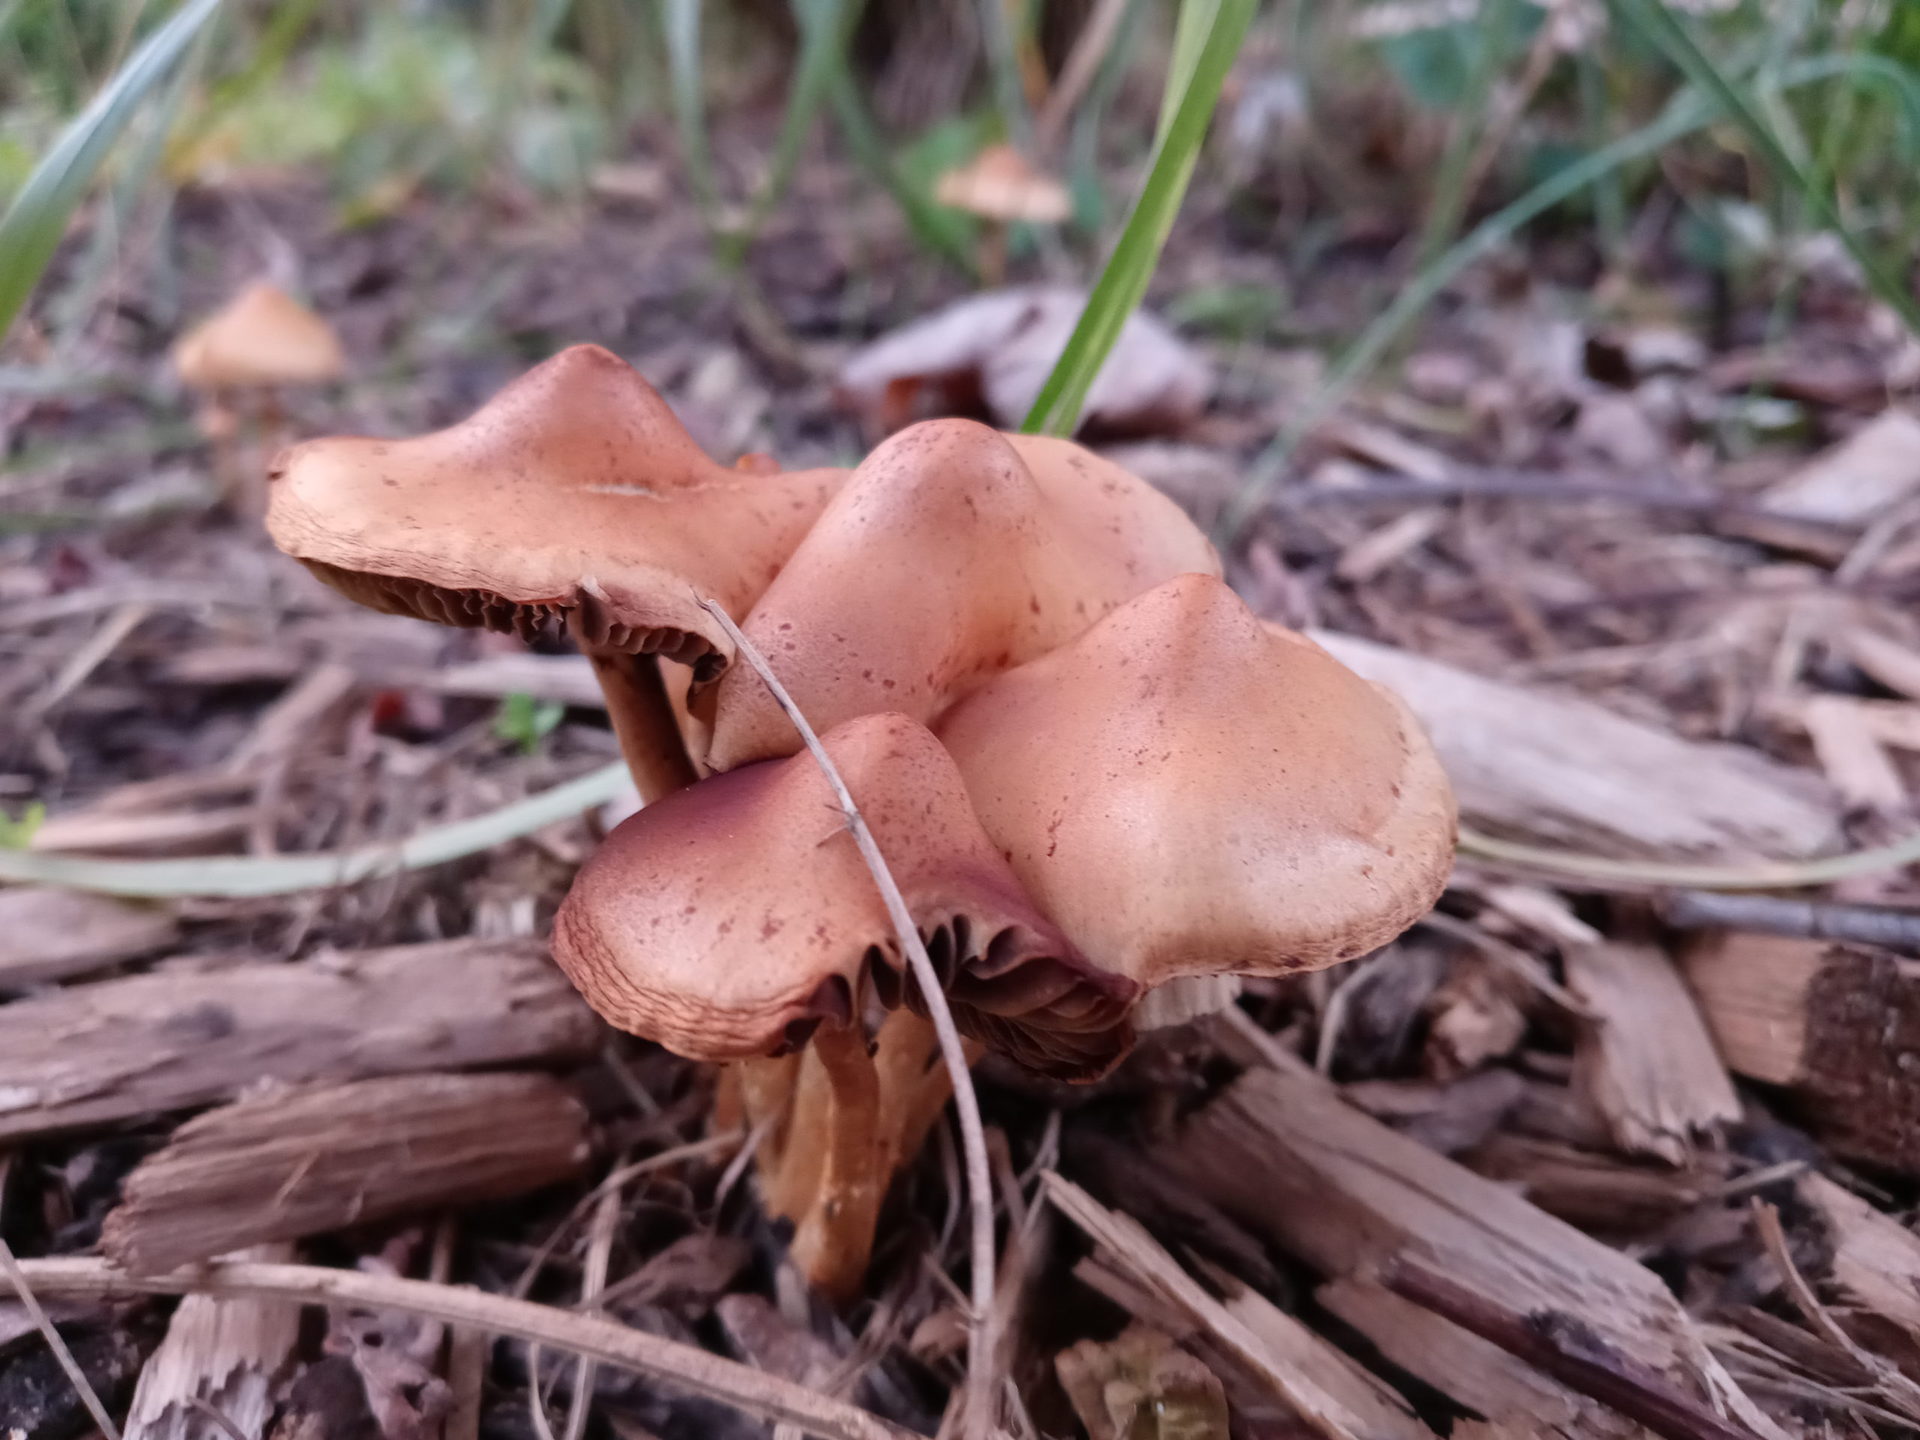 LG Stylo 6 mushrooms